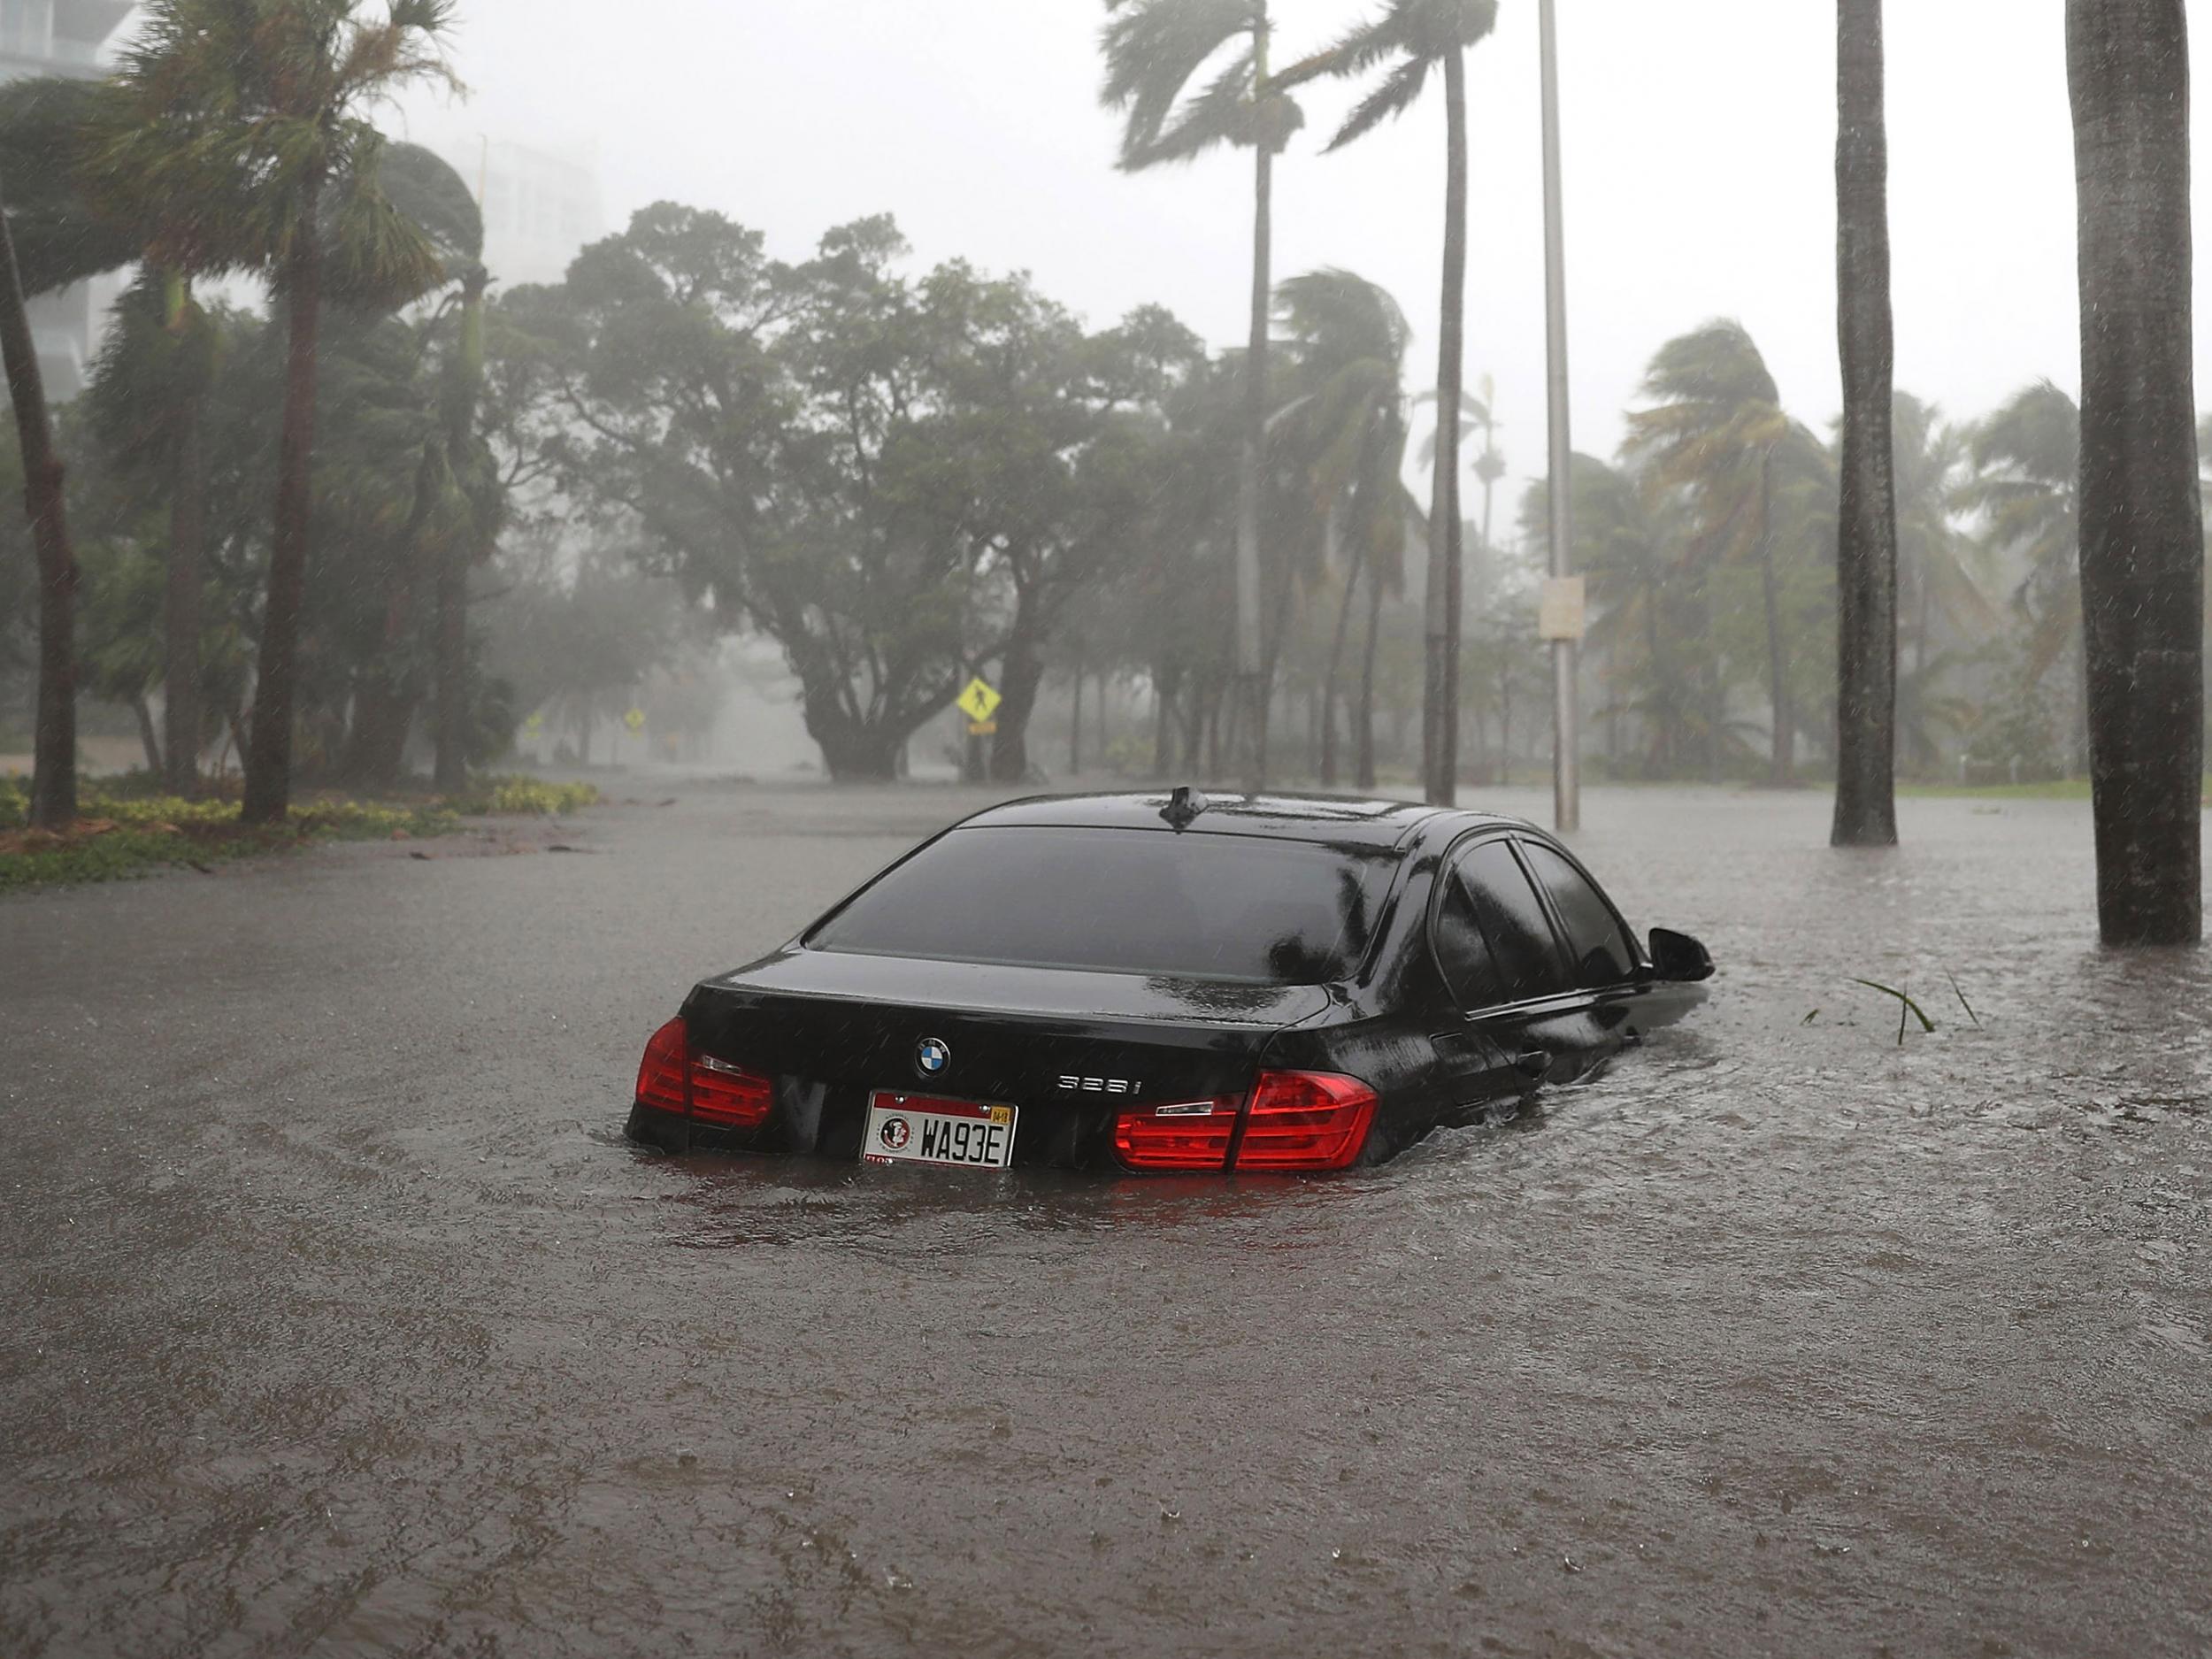 Ciudades costeras como Miami ya han sufrido graves inundaciones gracias a los últimos huracanes, y los investigadores advierten que las inundaciones podrían poner en peligro la infraestructura de Internet de la región